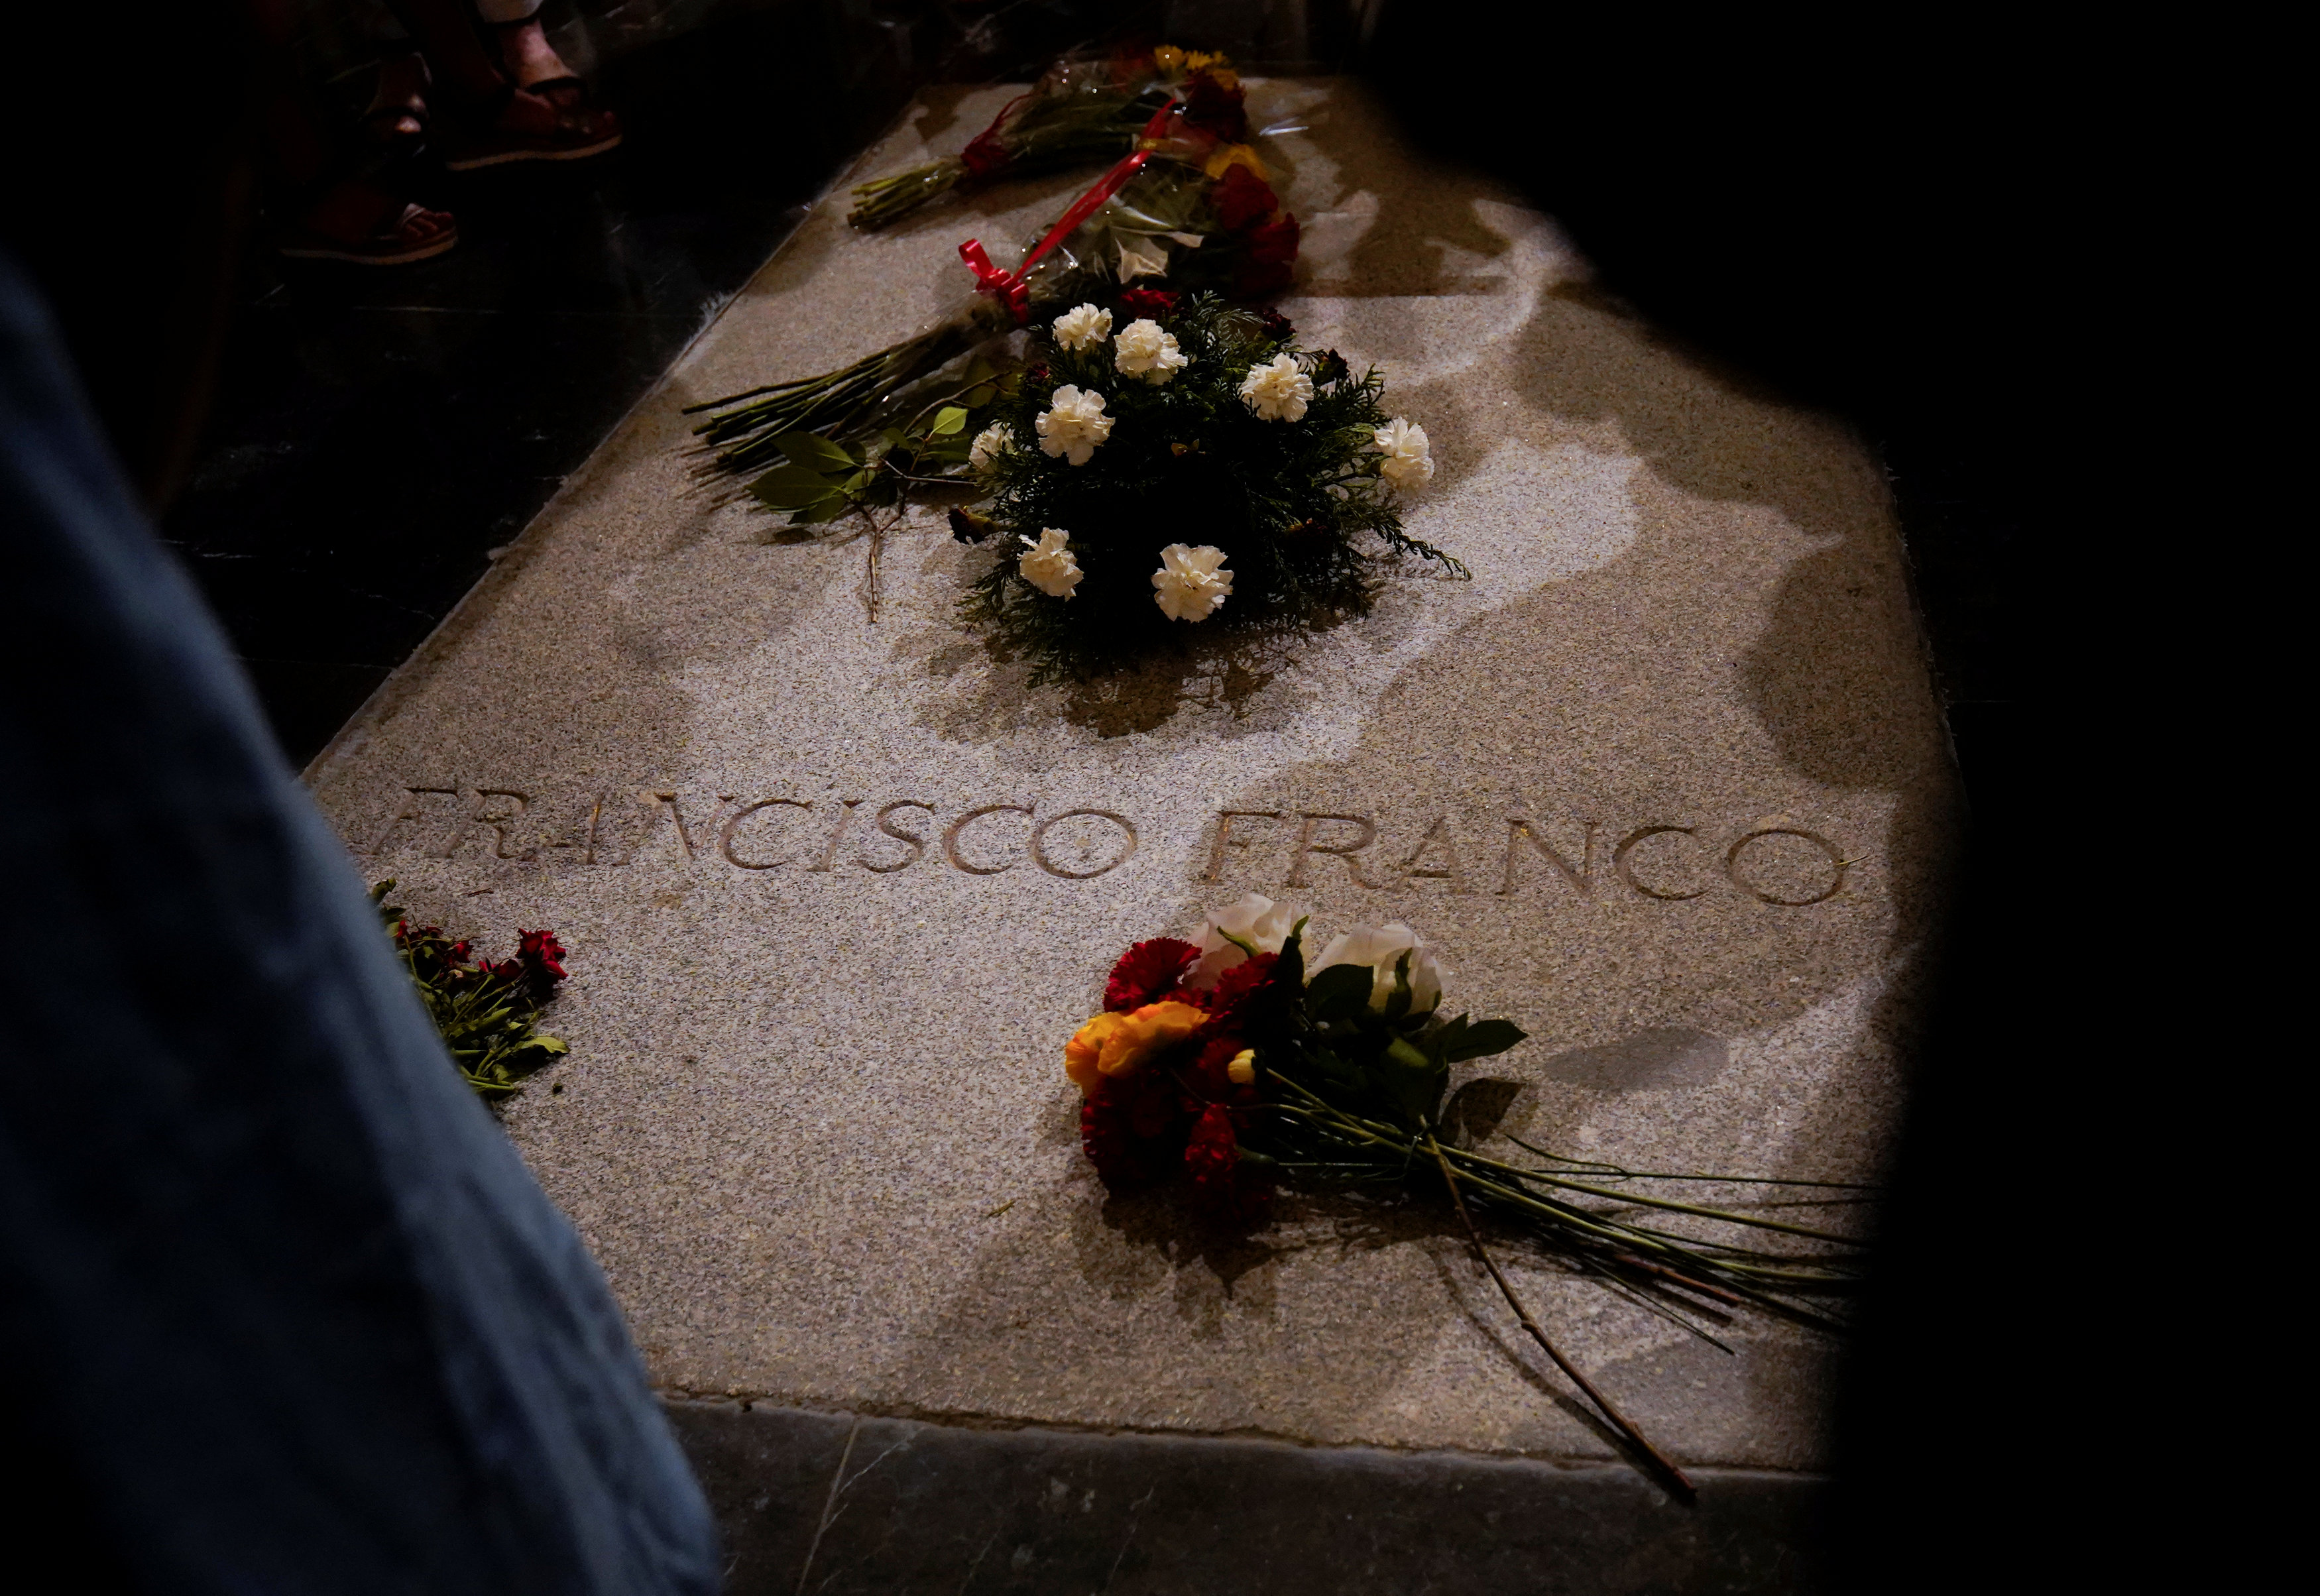 El Gobierno español aprobará la exhumación del dictador Franco